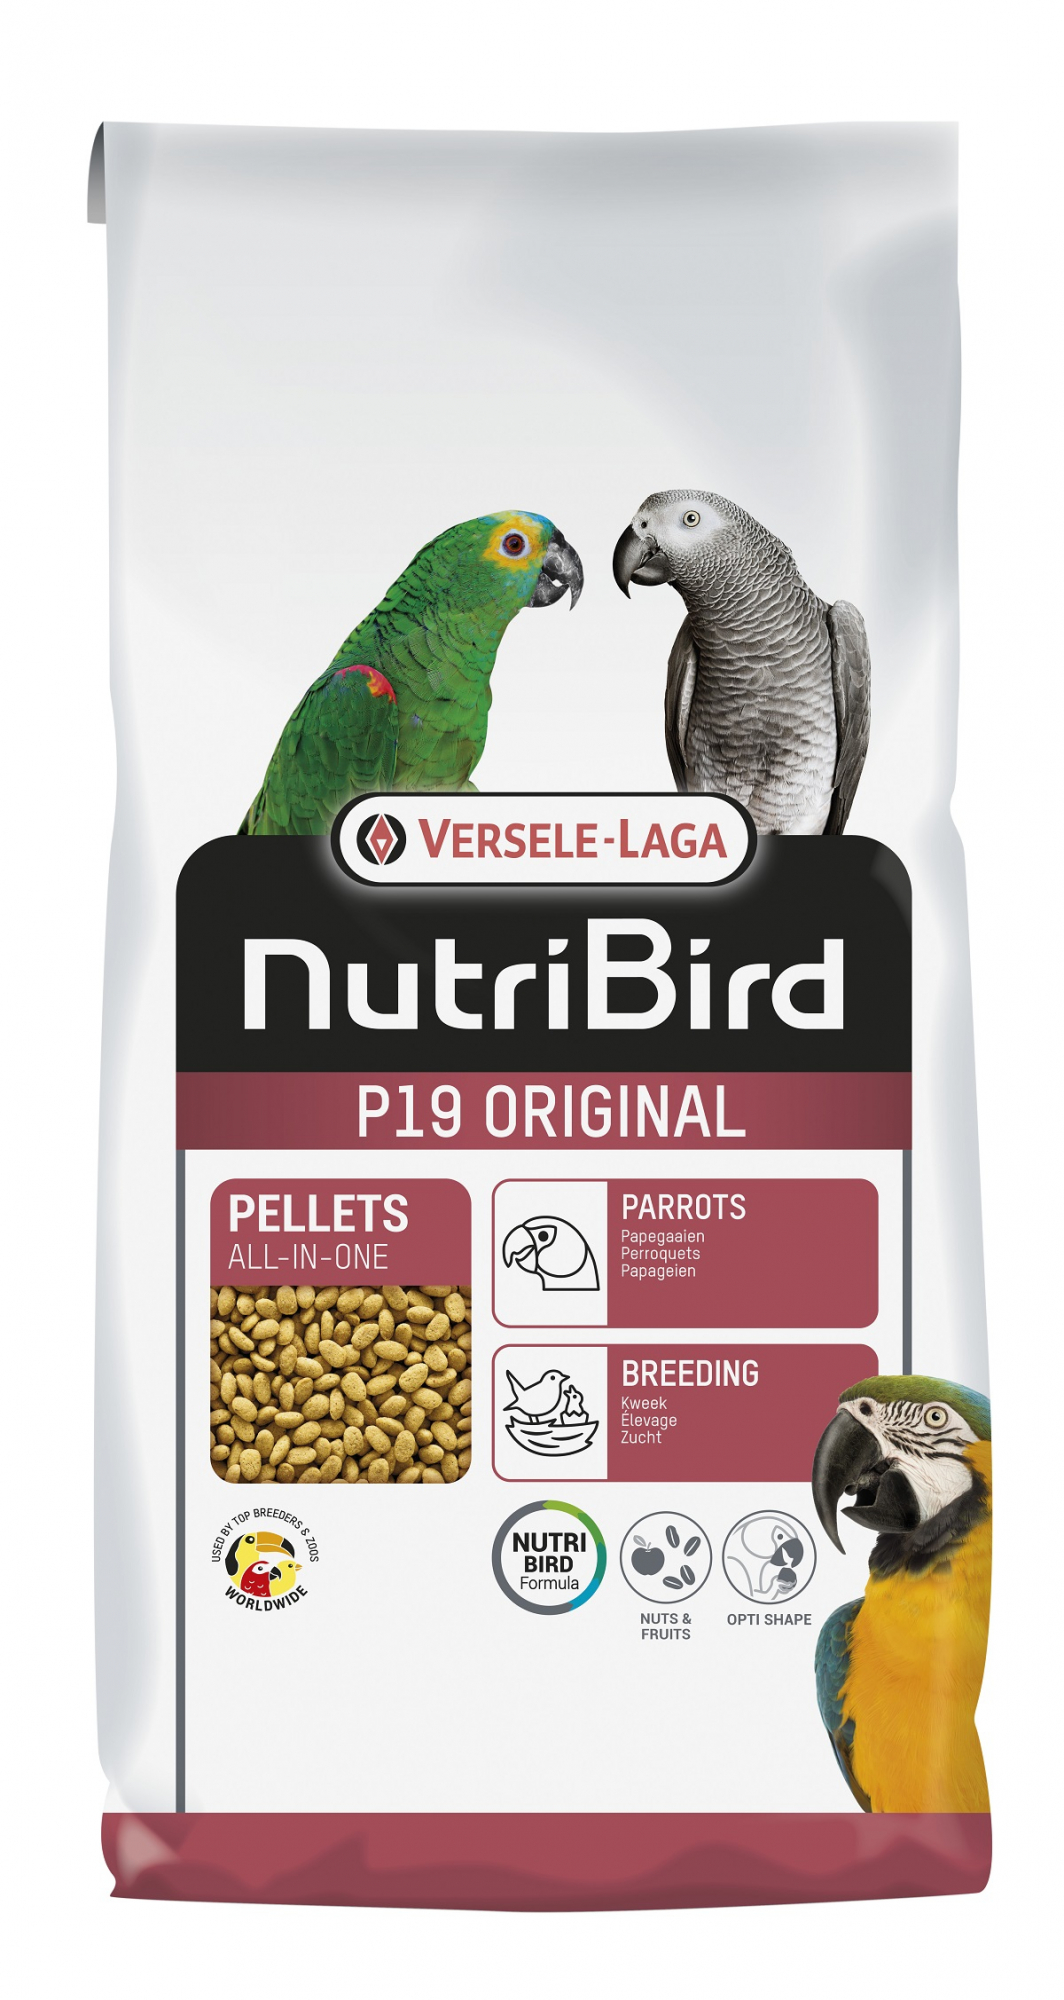 NutriBird P 19 Original für die Zucht von Papageien